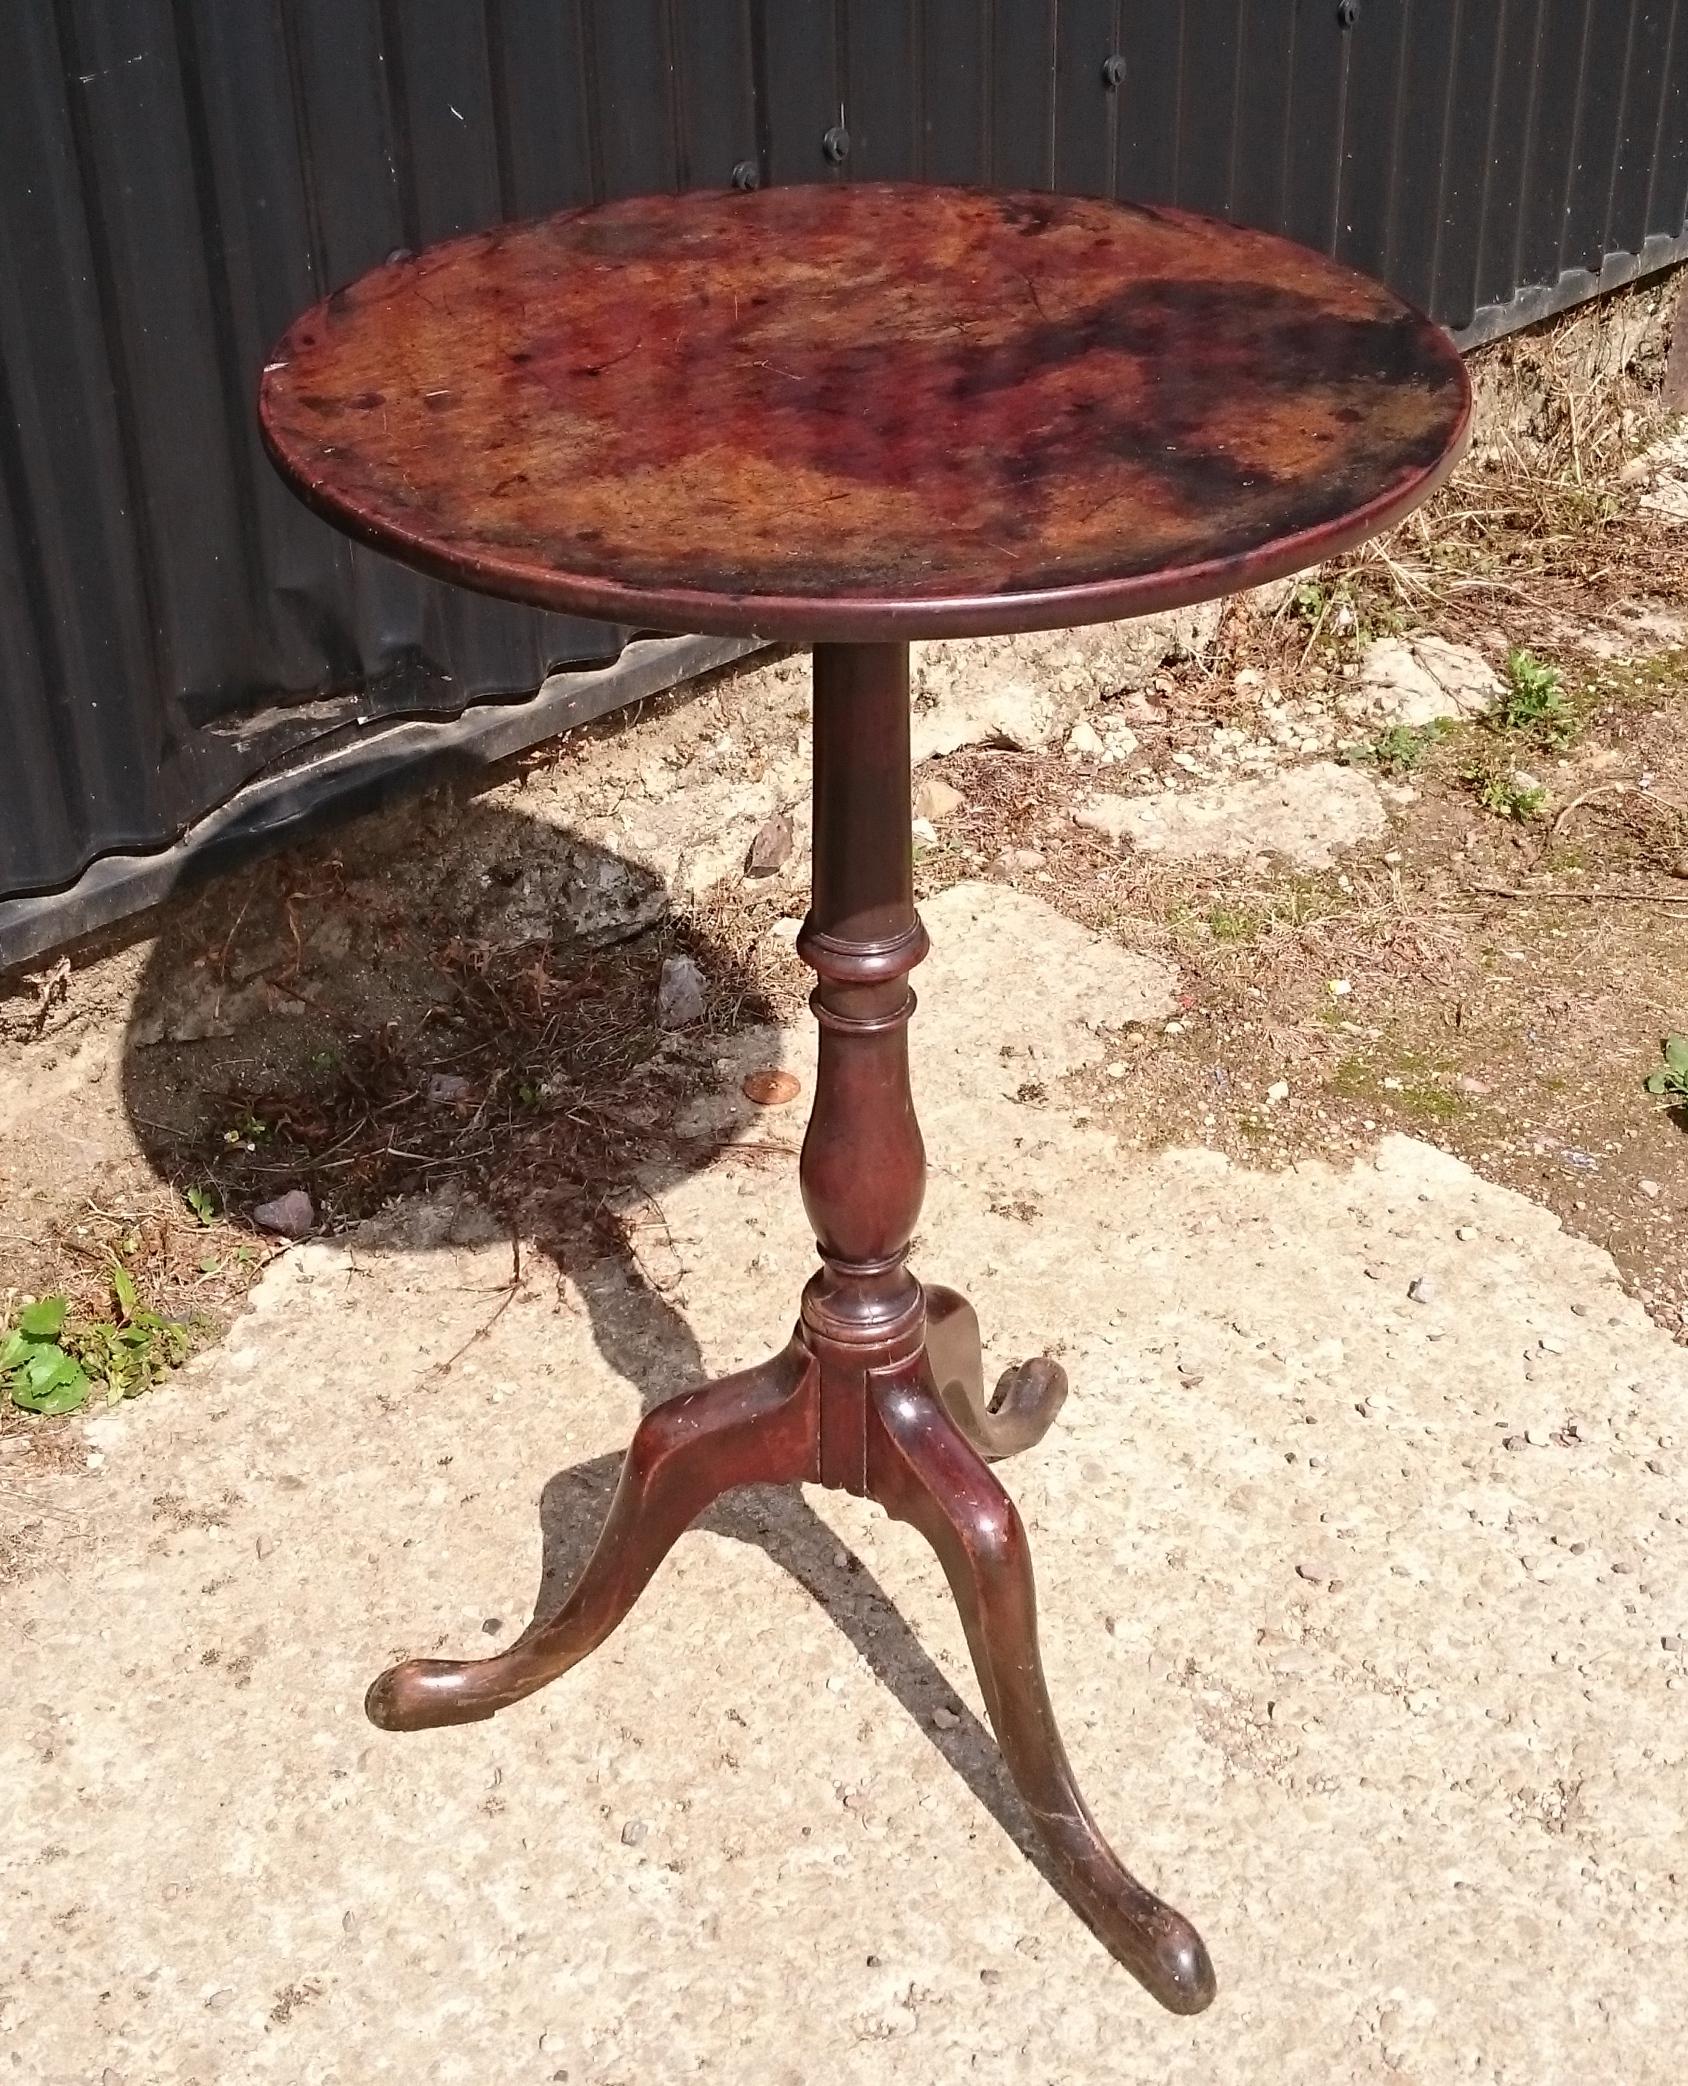 18. Jahrhundert George III Periode Mahagoni antiken Dreibein Wein Tisch. Dieser Tisch hat eine wunderbare Farbe und eine ausgezeichnete Patina. Der Sockel ist schlank und elegant, mit einem für das späte 18. Jahrhundert typischen, ausgestreckten